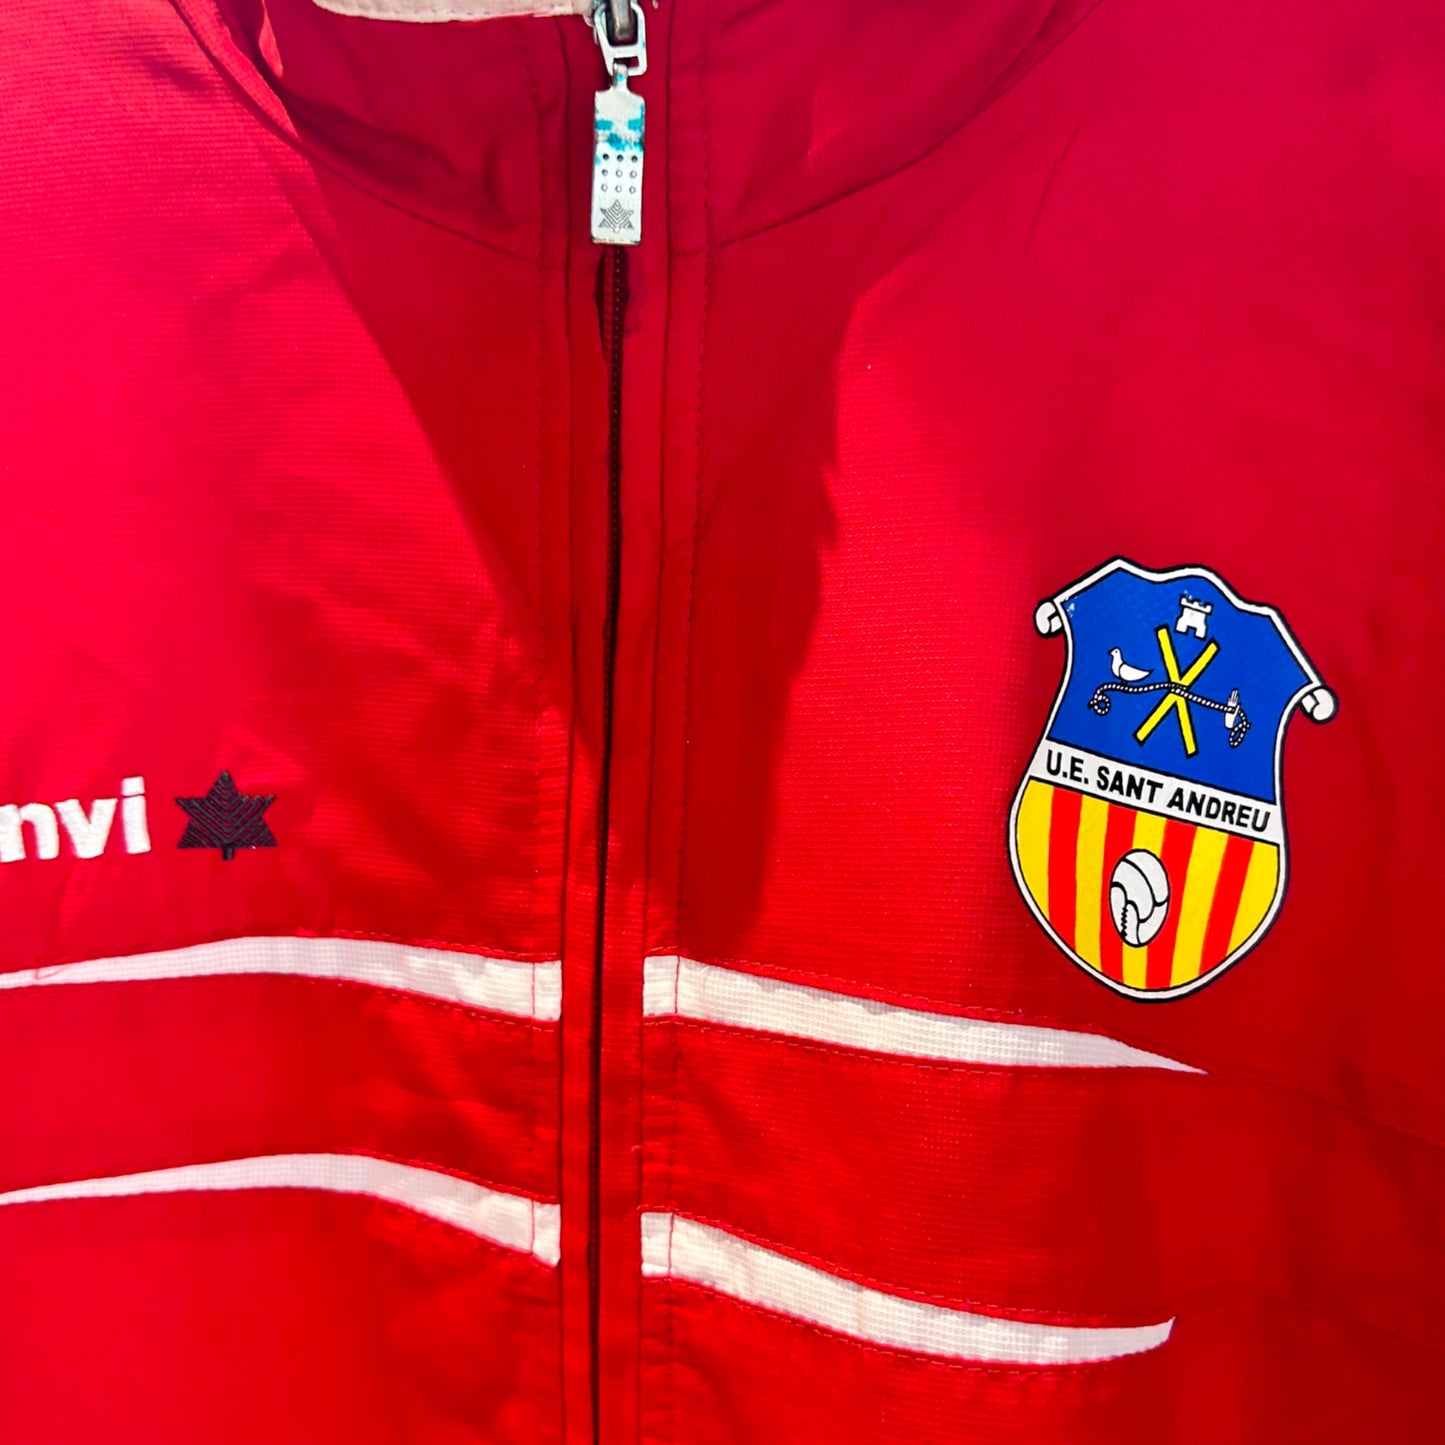 UE Sant Andreu 2013/14 Luanvi Track Jacket (XXL)